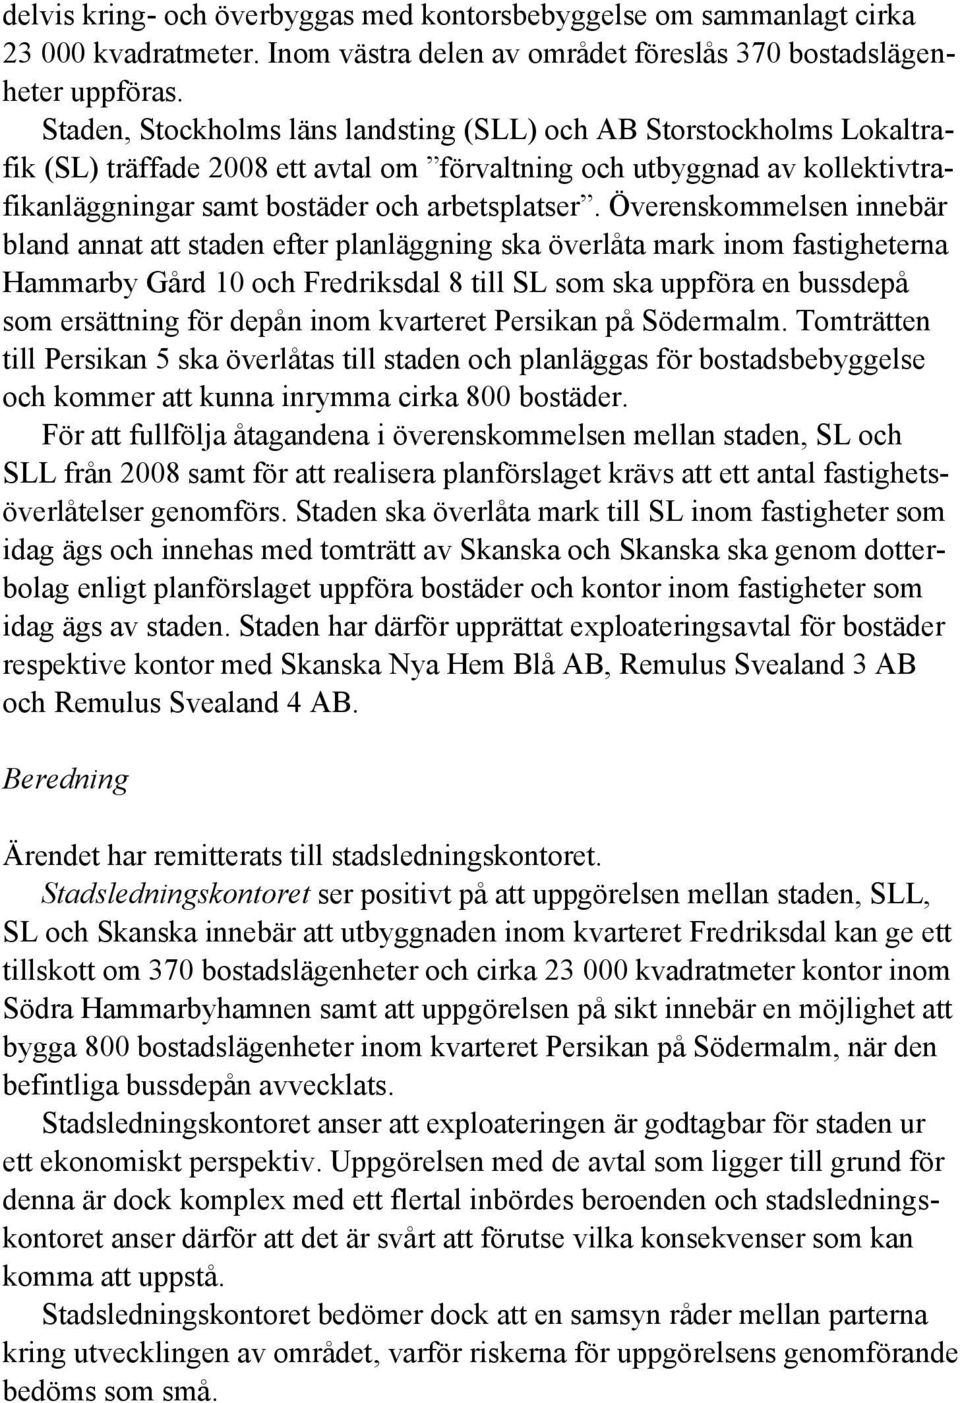 Överenskommelsen innebär bland annat att staden efter planläggning ska överlåta mark inom fastigheterna Hammarby Gård 10 och Fredriksdal 8 till SL som ska uppföra en bussdepå som ersättning för depån